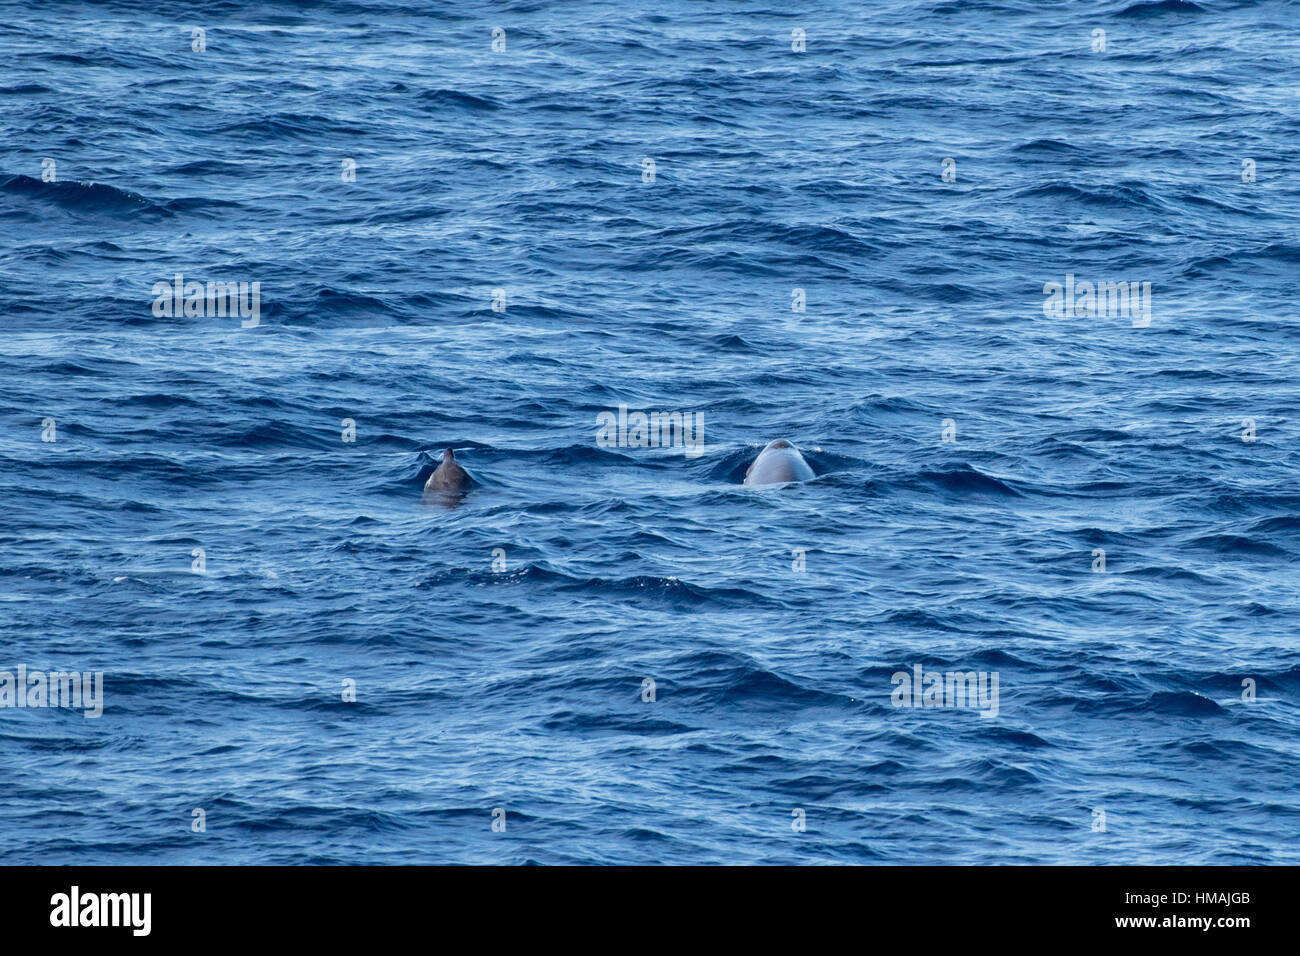 Les femelles adultes et les juvéniles Gervais' les baleines à bec, Mesoplodon europaeus, surfaçage, au large du Maroc, l'Océan Atlantique Banque D'Images